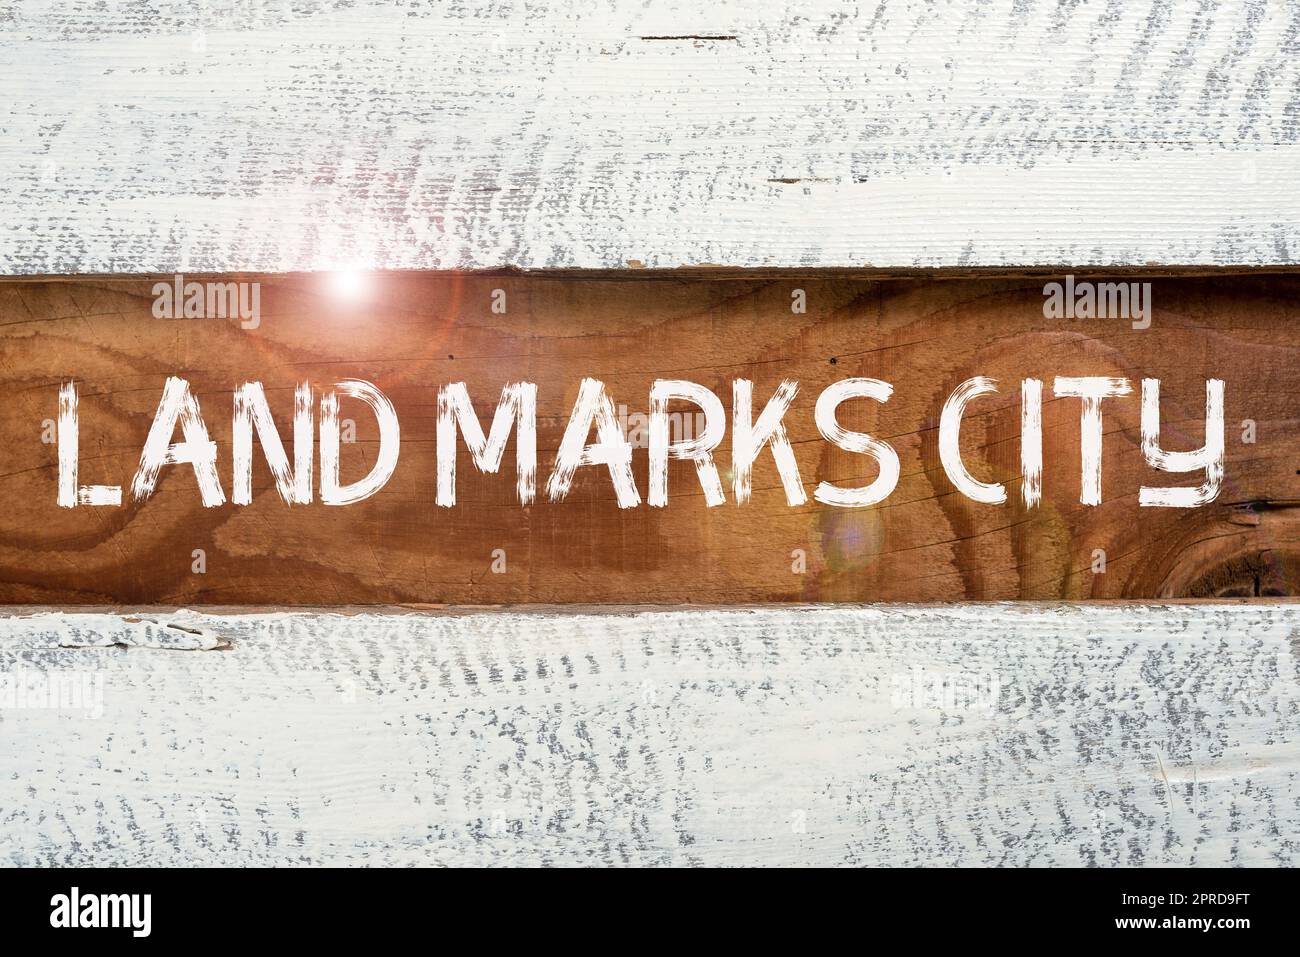 Ispirazione che mostra l'insegna Land Marks City. Approccio aziendale importanti luoghi di architettura nelle città da visitare informazioni importanti scritte su Piece of Wood al piano. Foto Stock